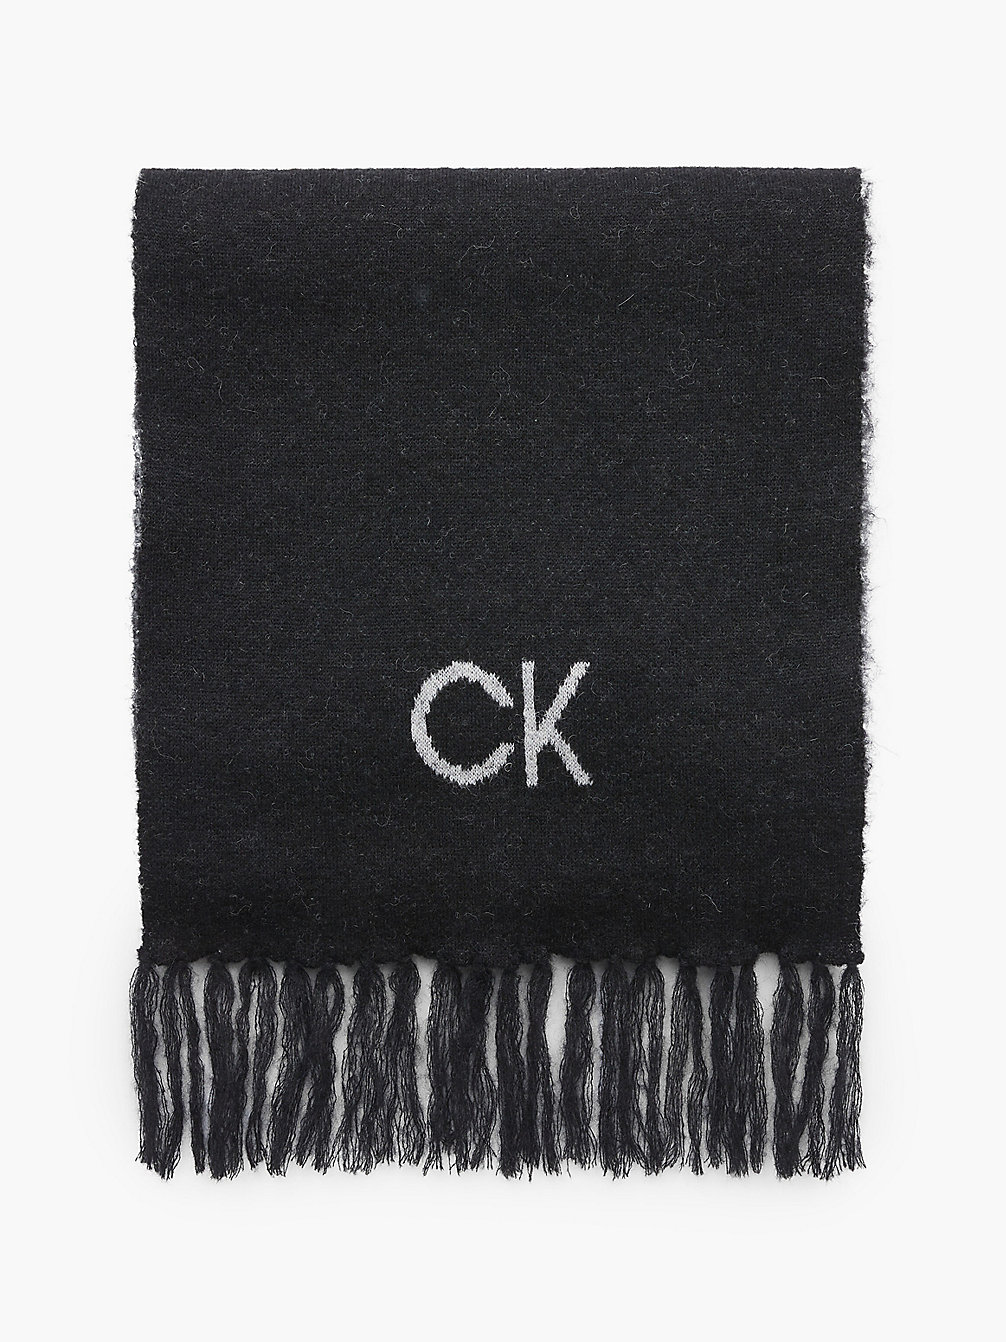 CK BLACK Wool Blend Logo Scarf undefined women Calvin Klein